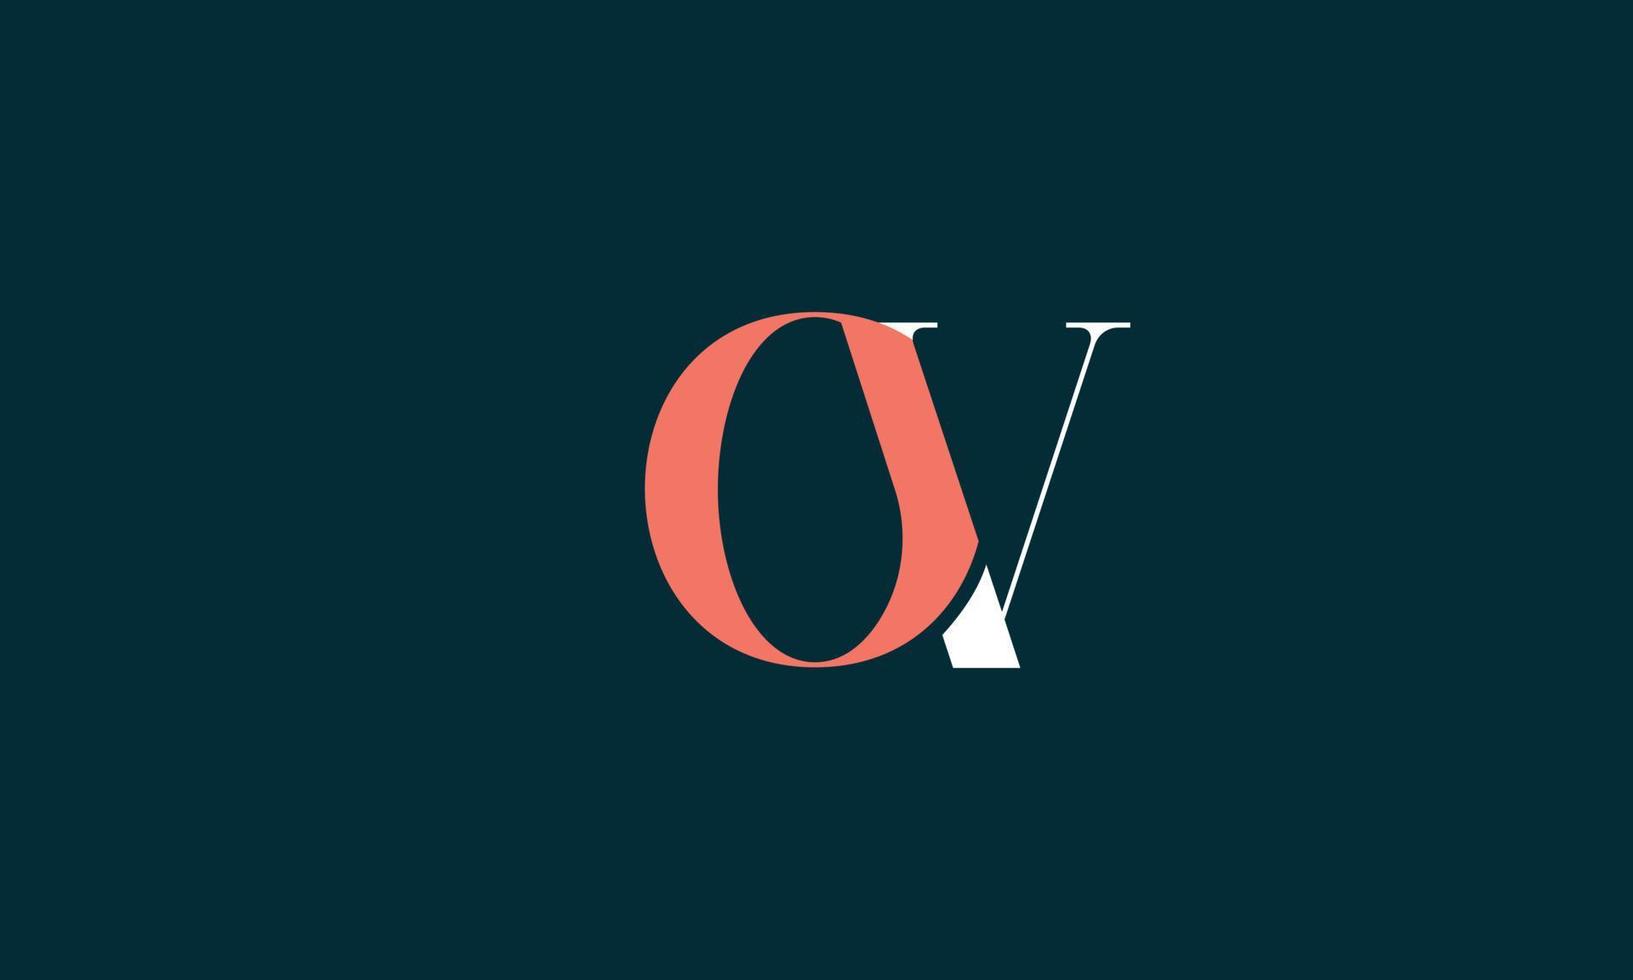 letras do alfabeto iniciais monograma logotipo ov, vo, o e v vetor